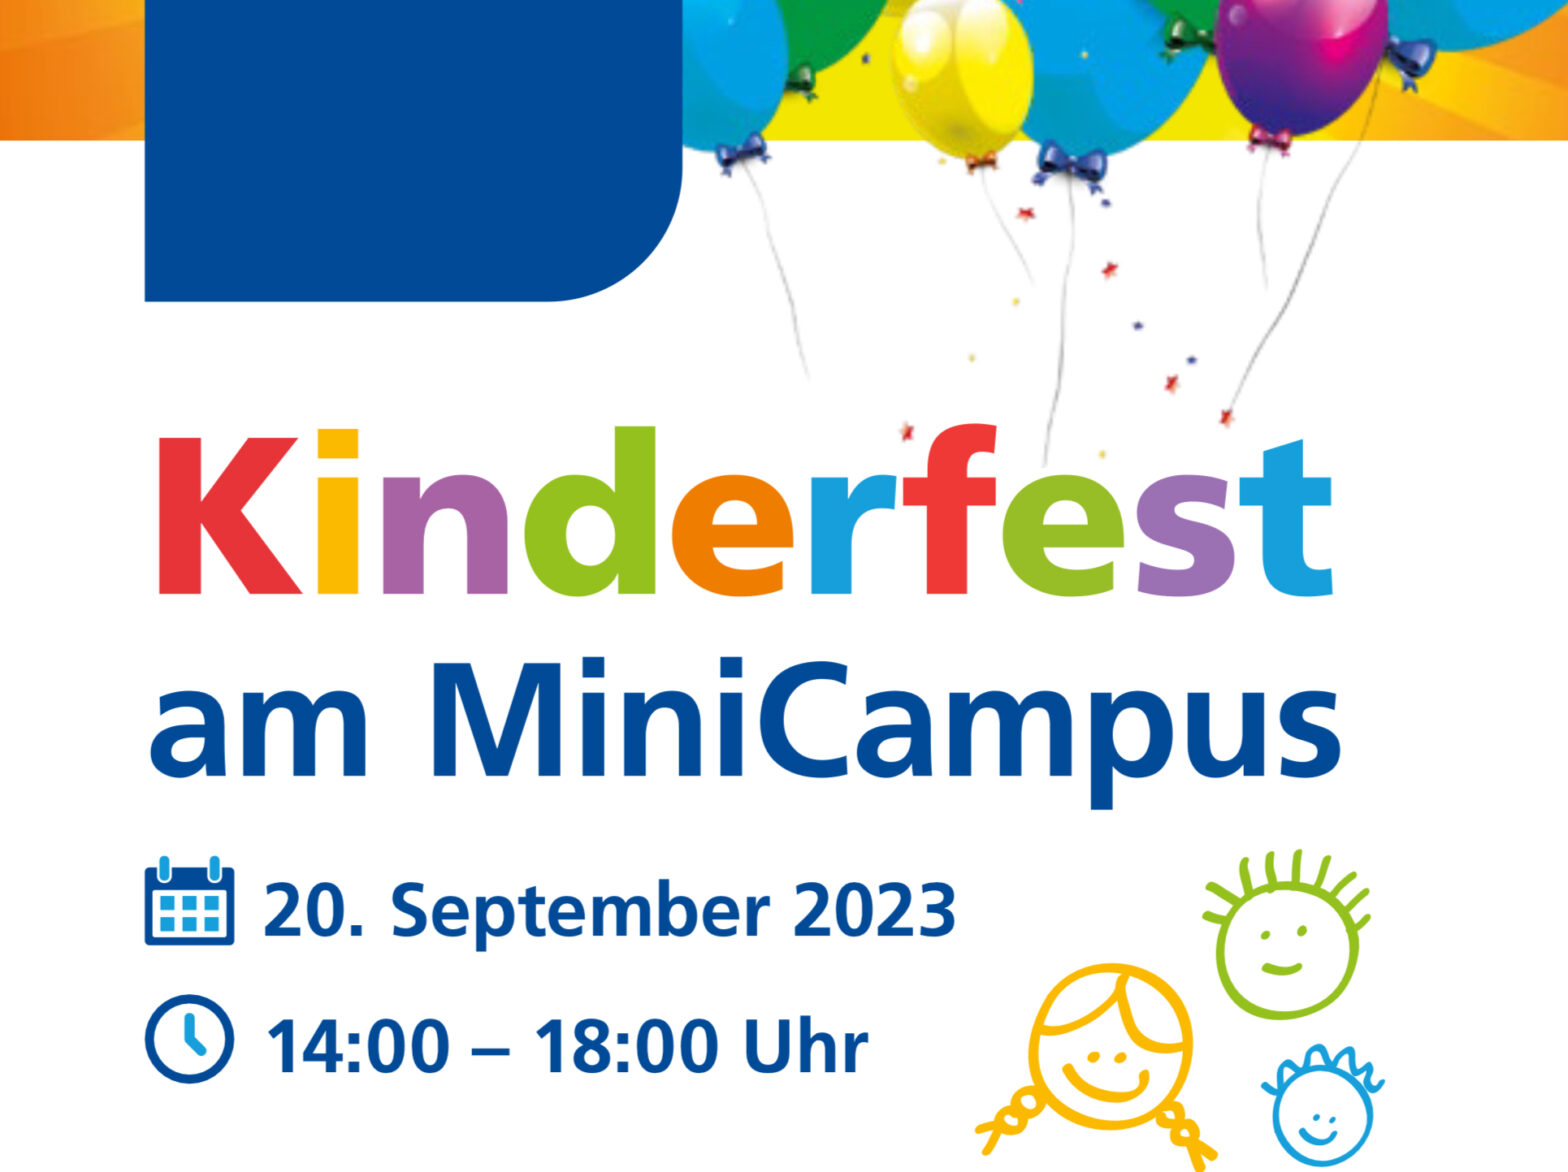 Kinderfest am MiniCampus